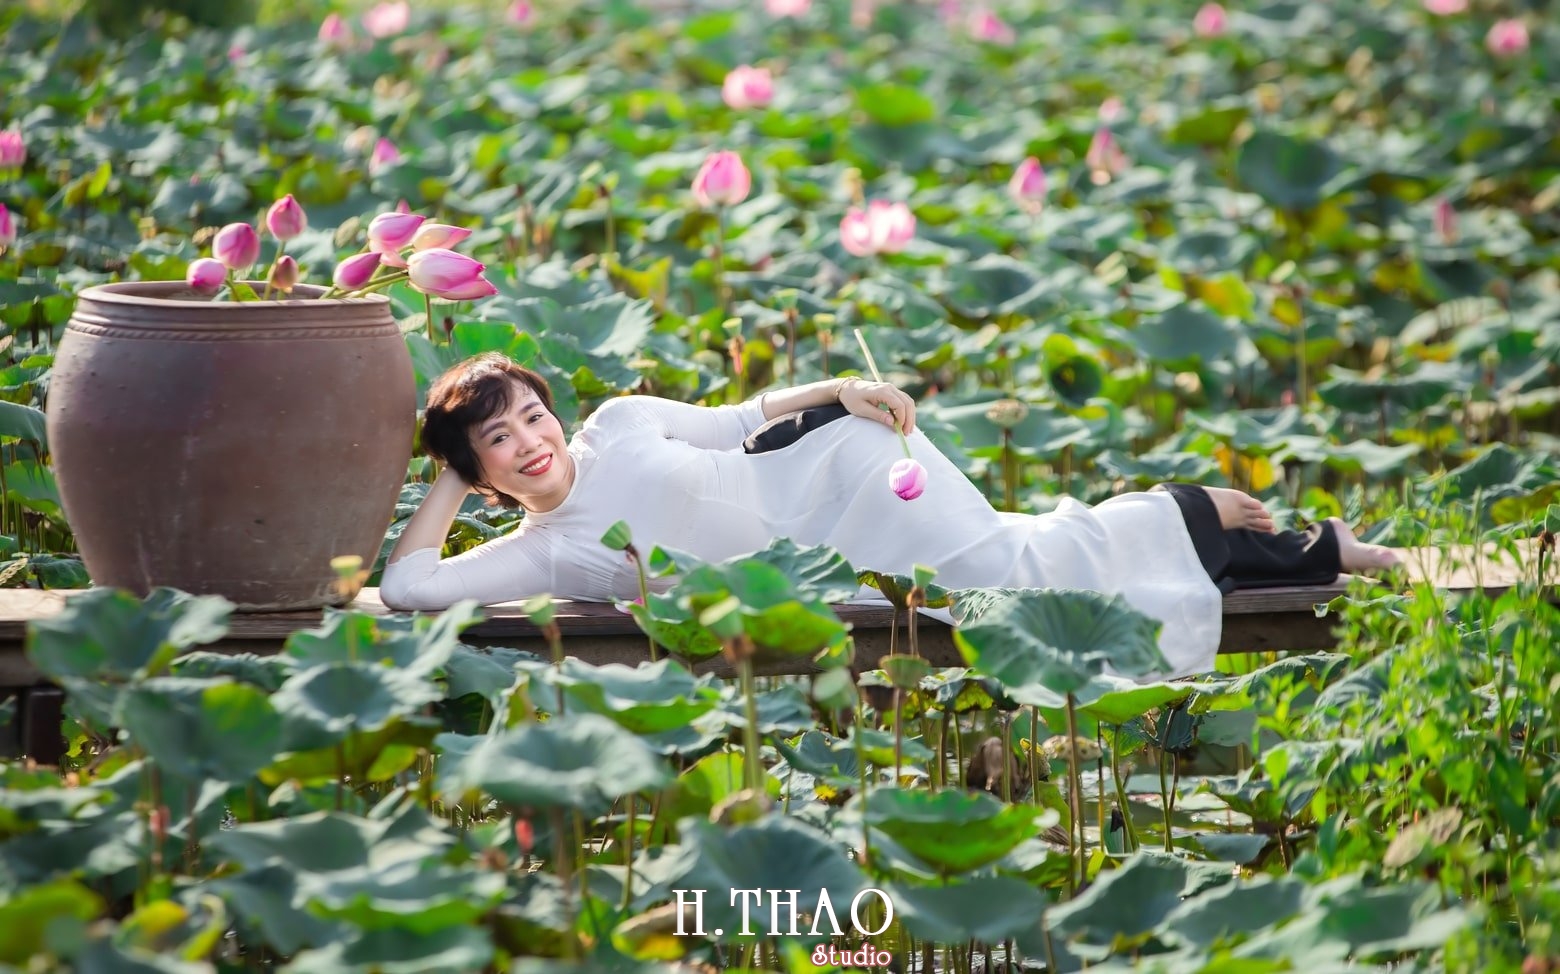 39 Cách Tạo Dáng Chụp Ảnh Với Hoa Sen Tuyệt Đẹp - Hthao Studio